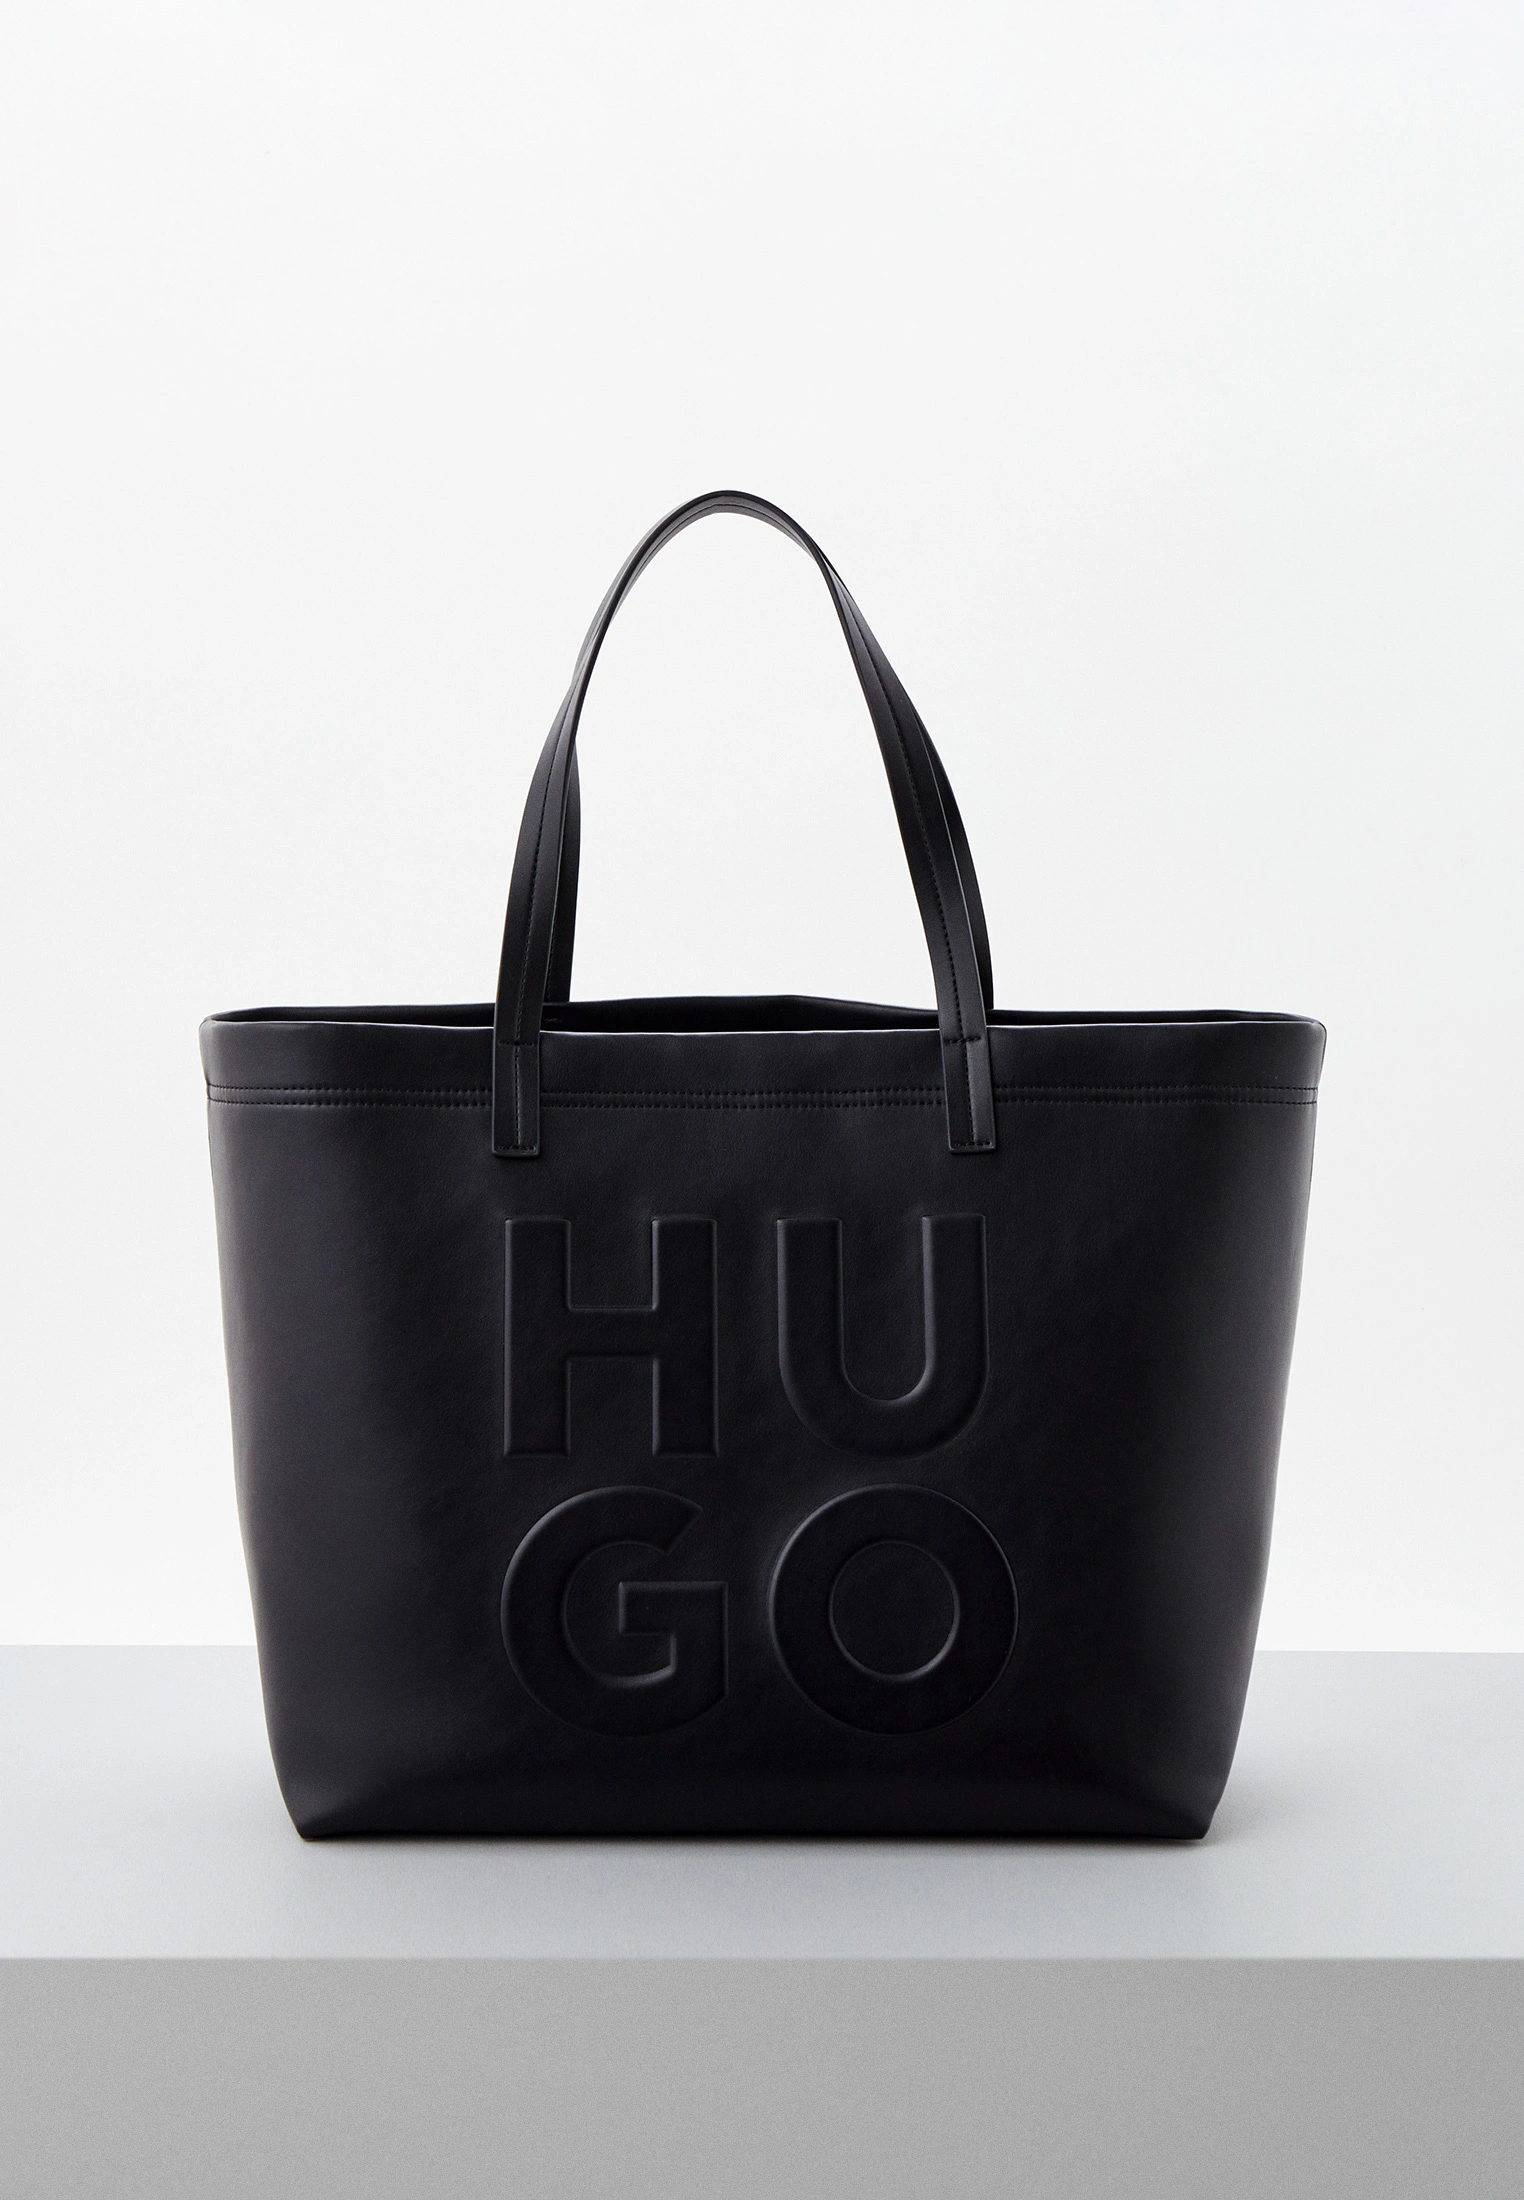 ТОП-10 особенностей сумок бренда Hugo